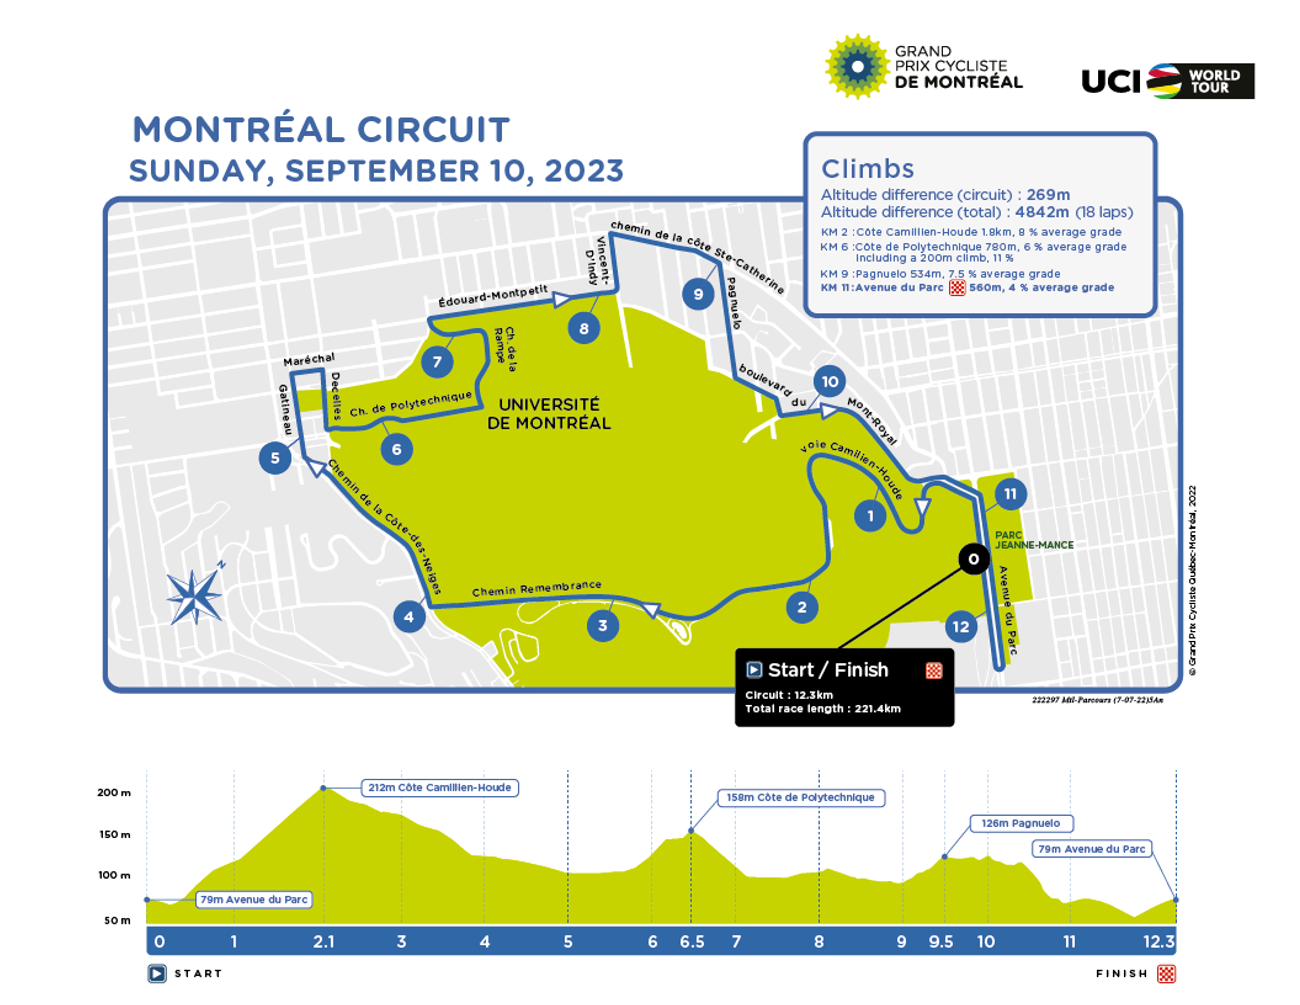 Grand Prix Cycliste de Montréal 2023 route